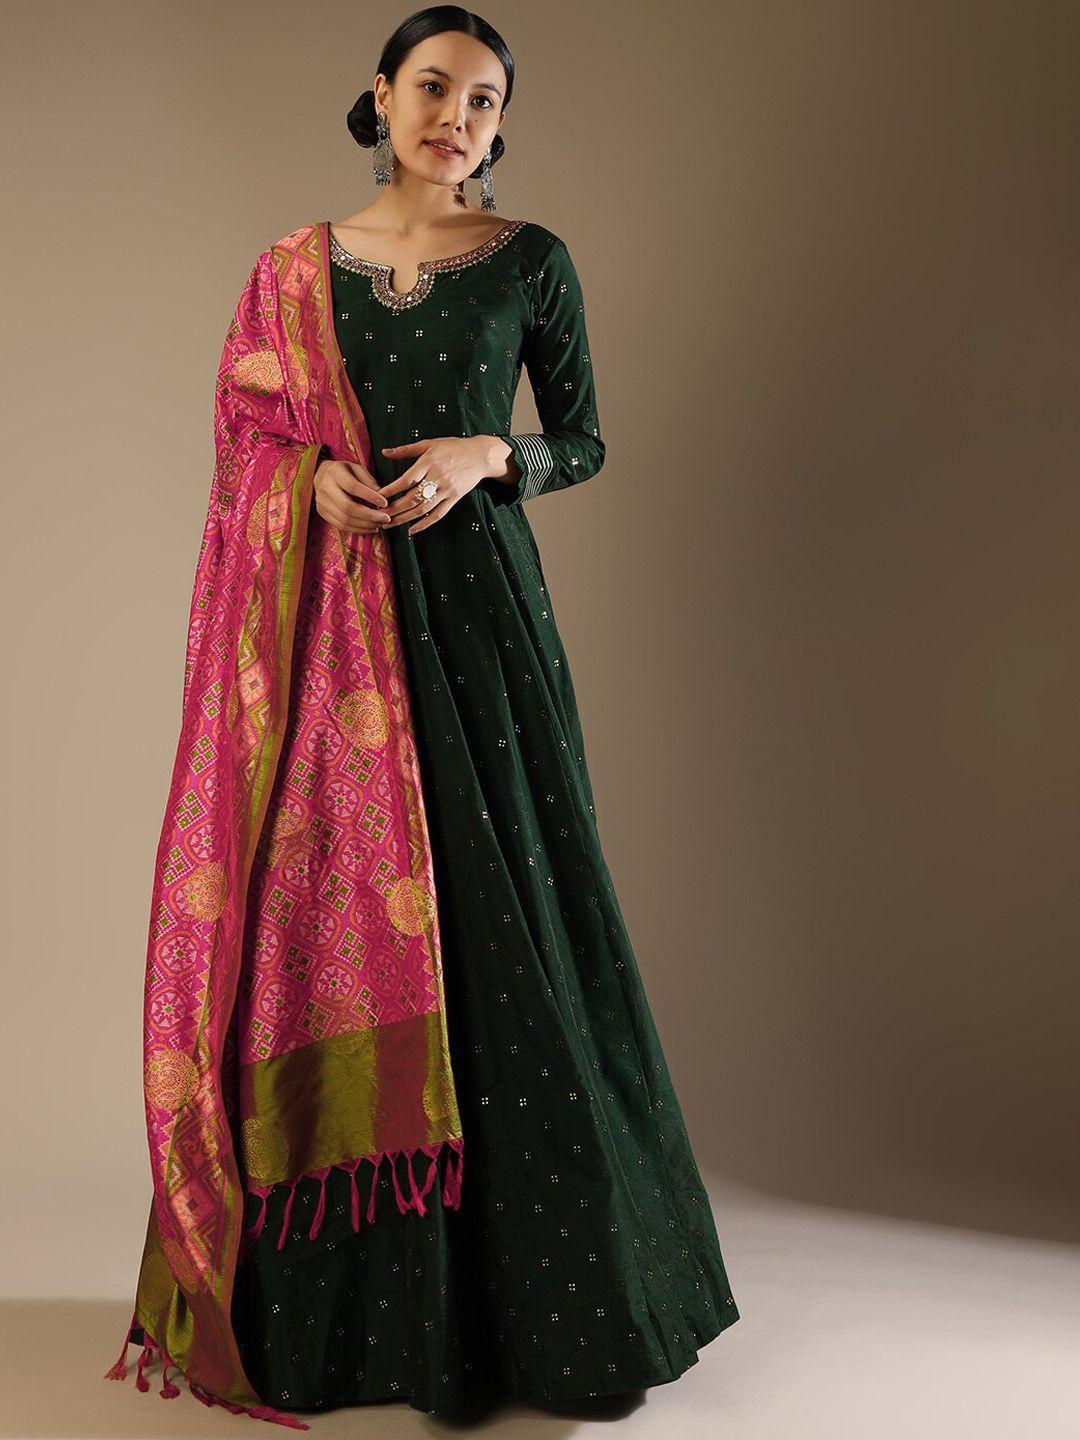 kalki fashion ethnic motifs printed georgette ethnic dress with dupatta